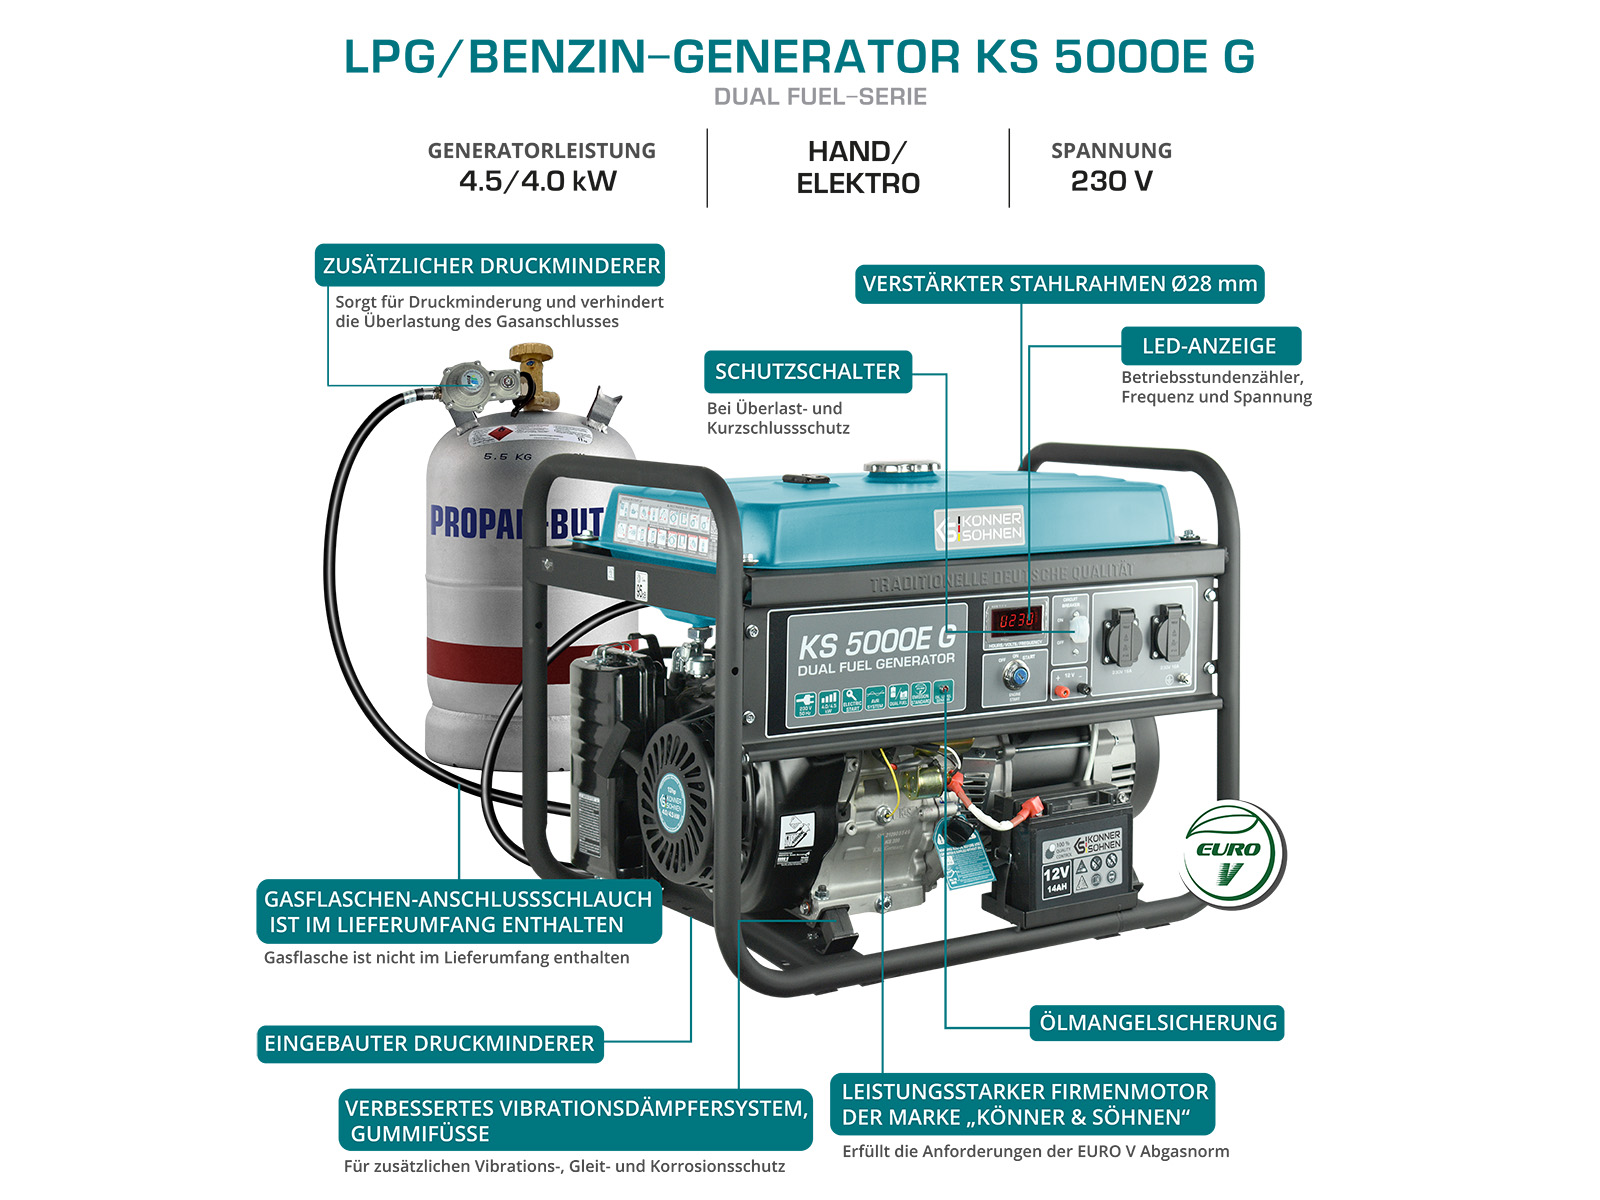 LPG/Benzin-Generator "Könner & Söhnen" KS 5000E G